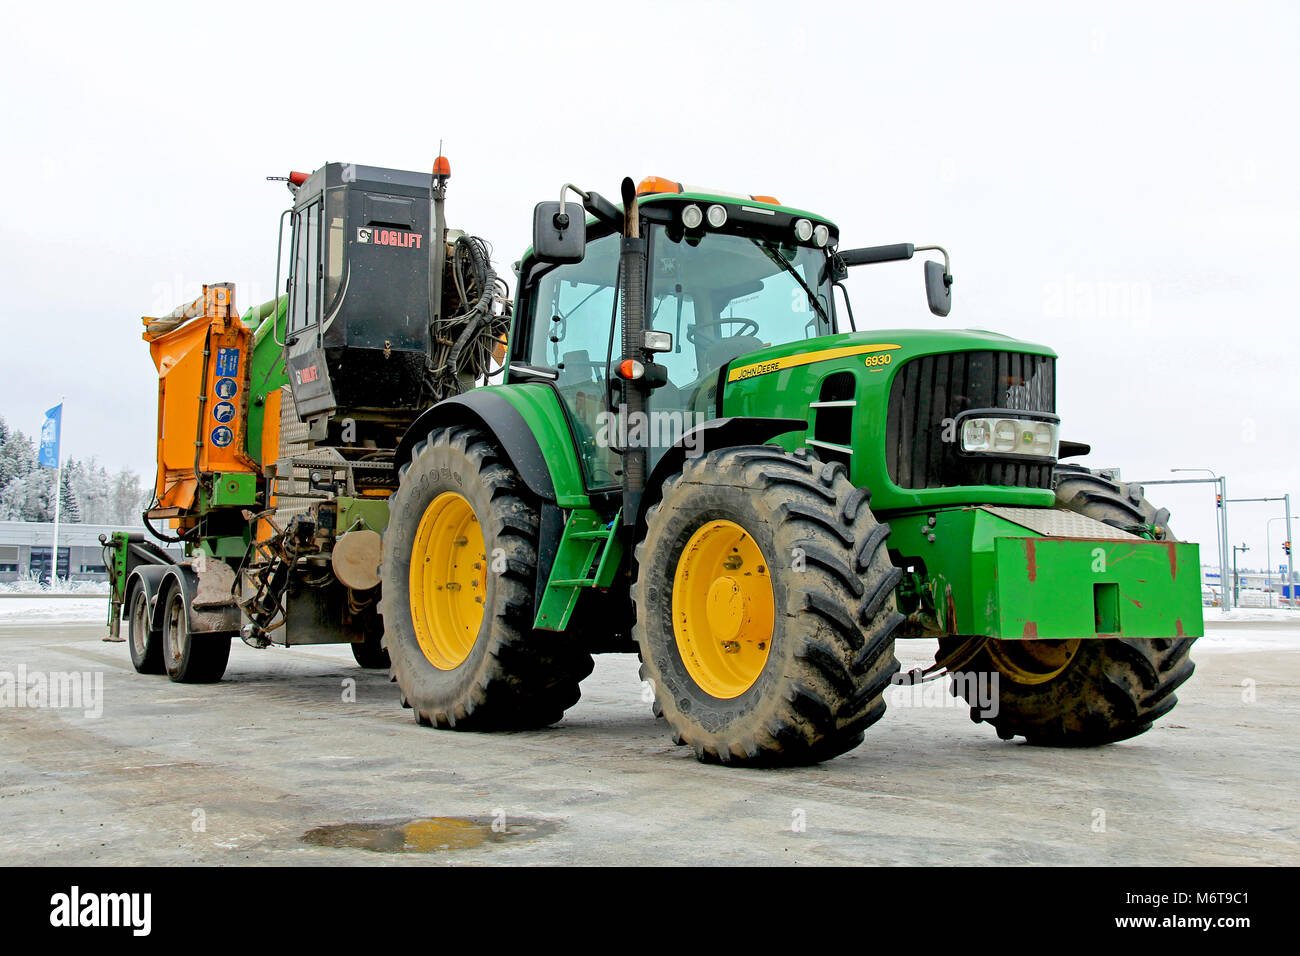 Mariehamn, Finnland - Januar 25, 2014: John Deere Traktor 6390 und mobile  Holz chipping Maschine im Winter. In Finnland, das Ziel, die Nutzung von  Holz Chip als Stockfotografie - Alamy